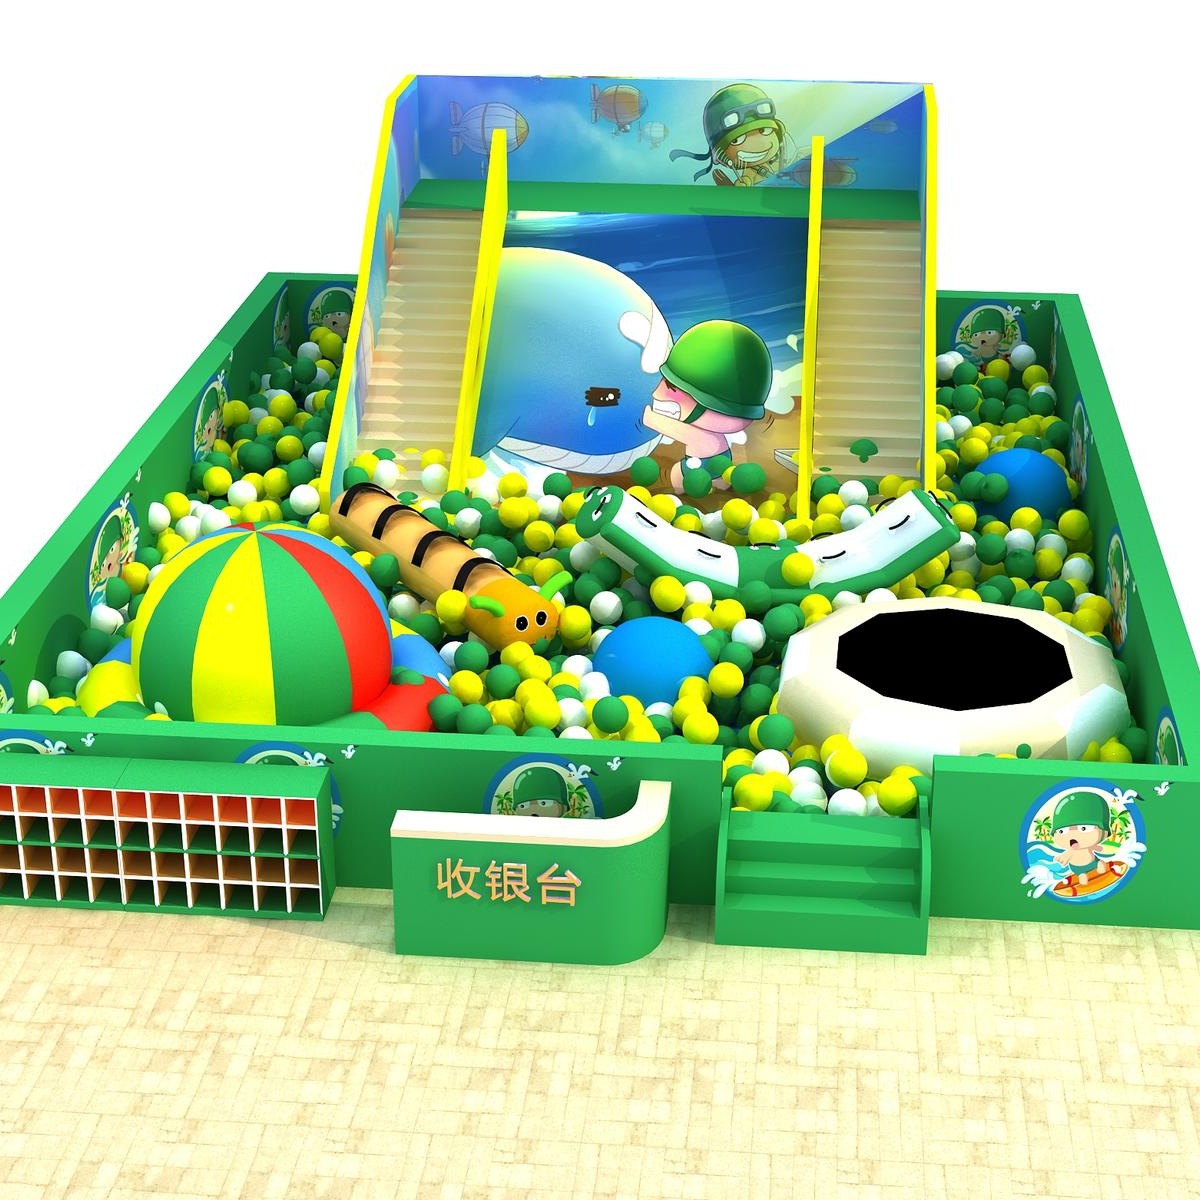 淘气堡设备 儿童游乐设备 铭博 超级蹦床公园 超级大滑梯 百万球池 绿色